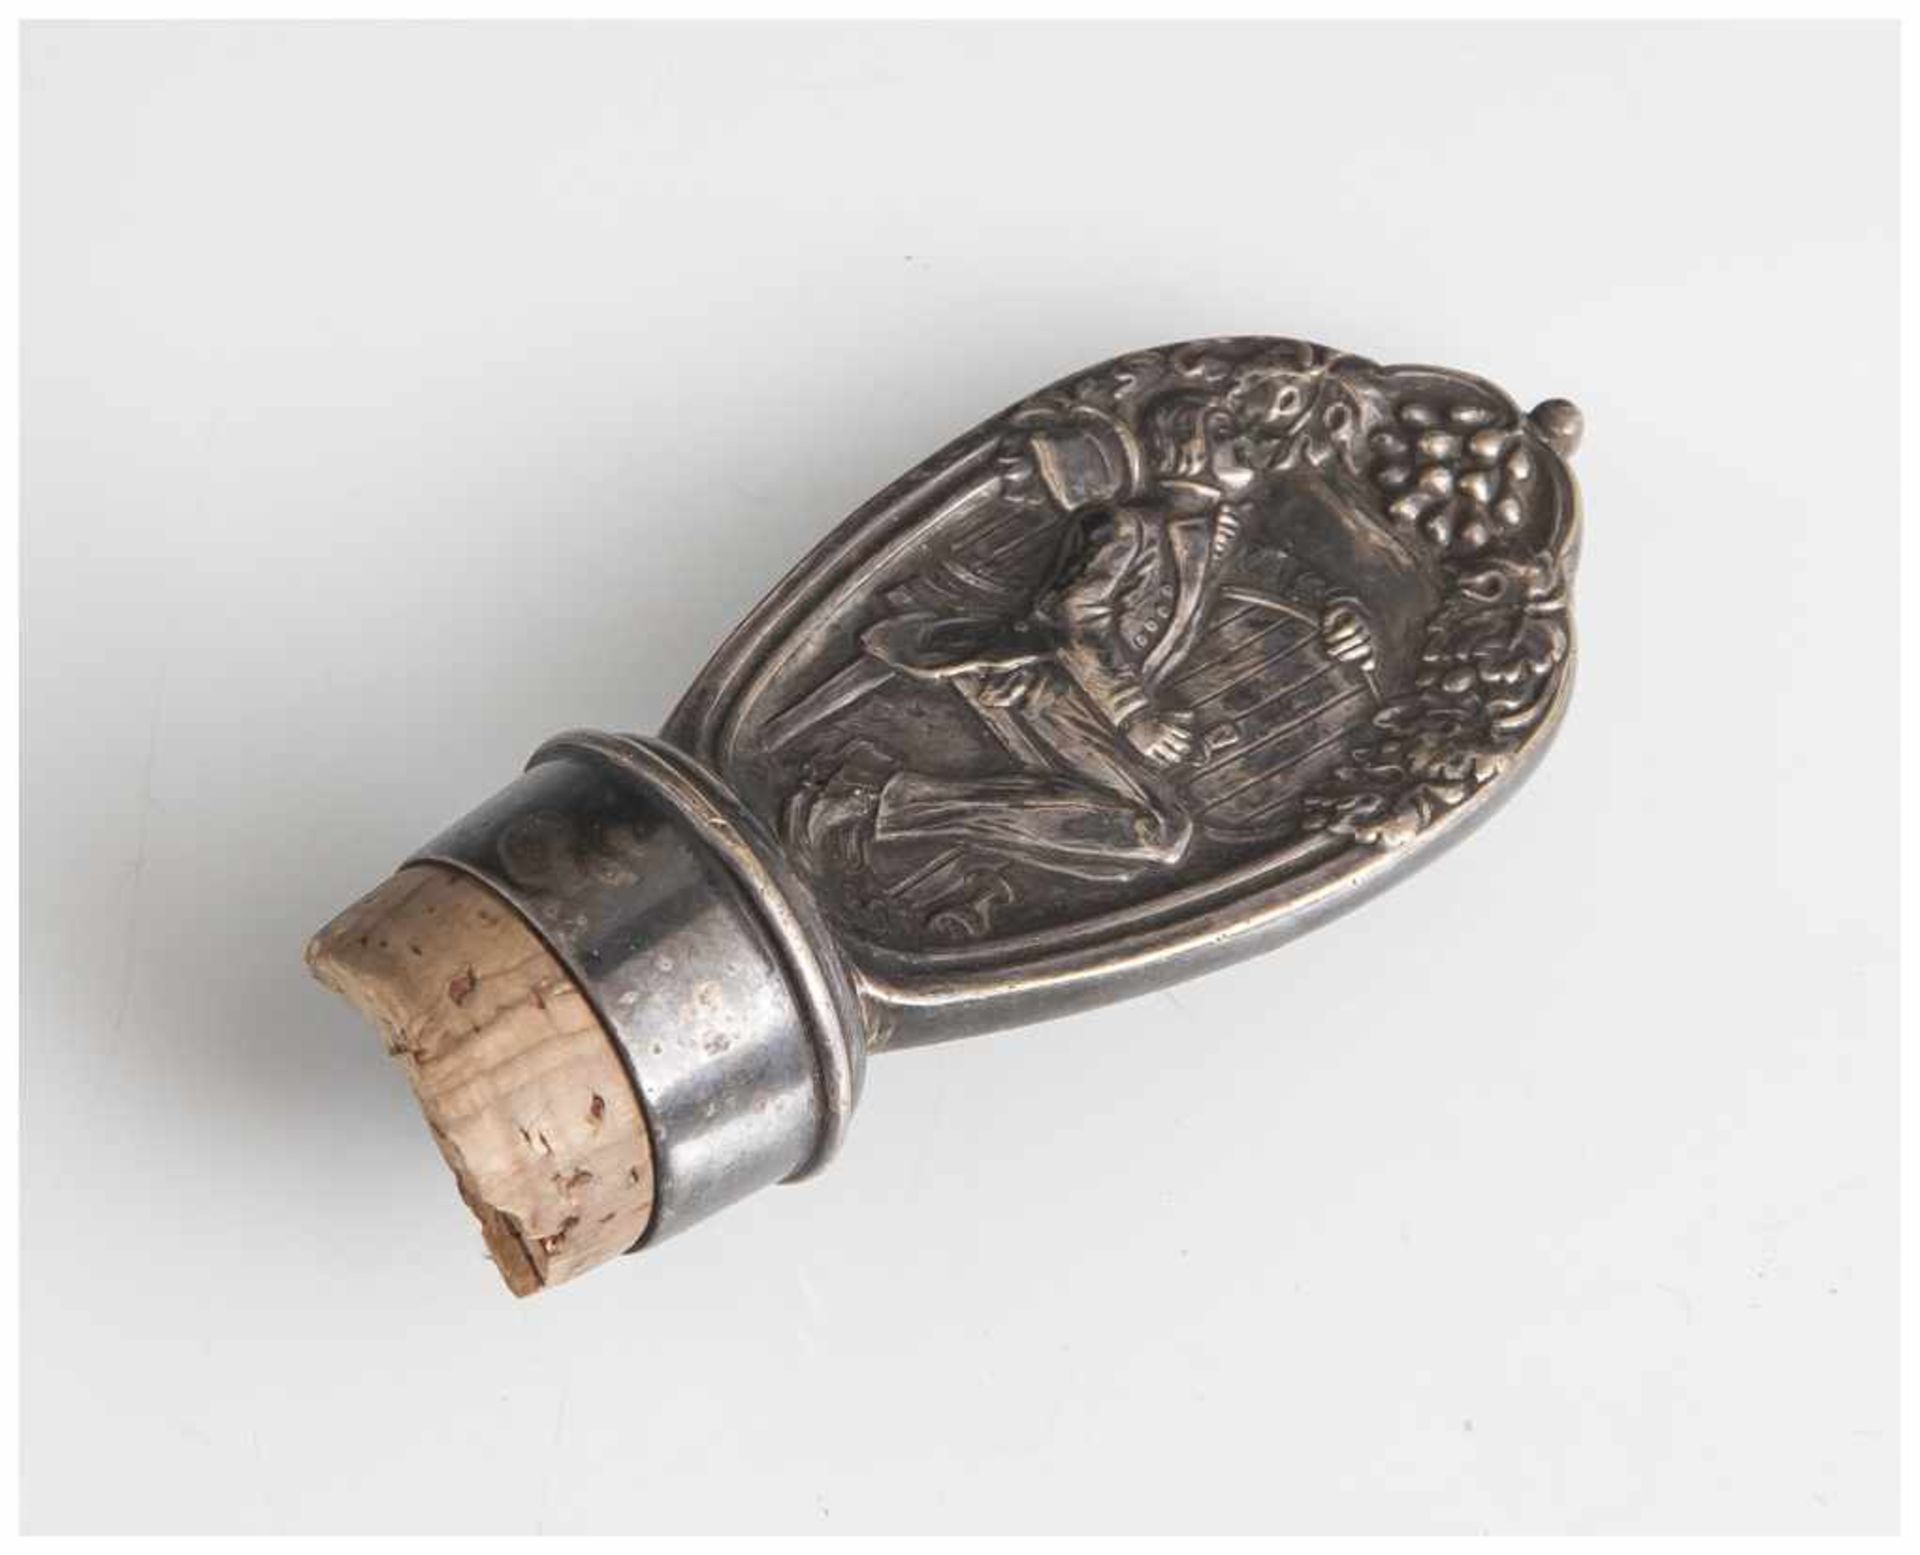 Flaschenverschluss, um 1900, Metall versilbert, beidseitig reliefierte Darst. eines Mannes auf